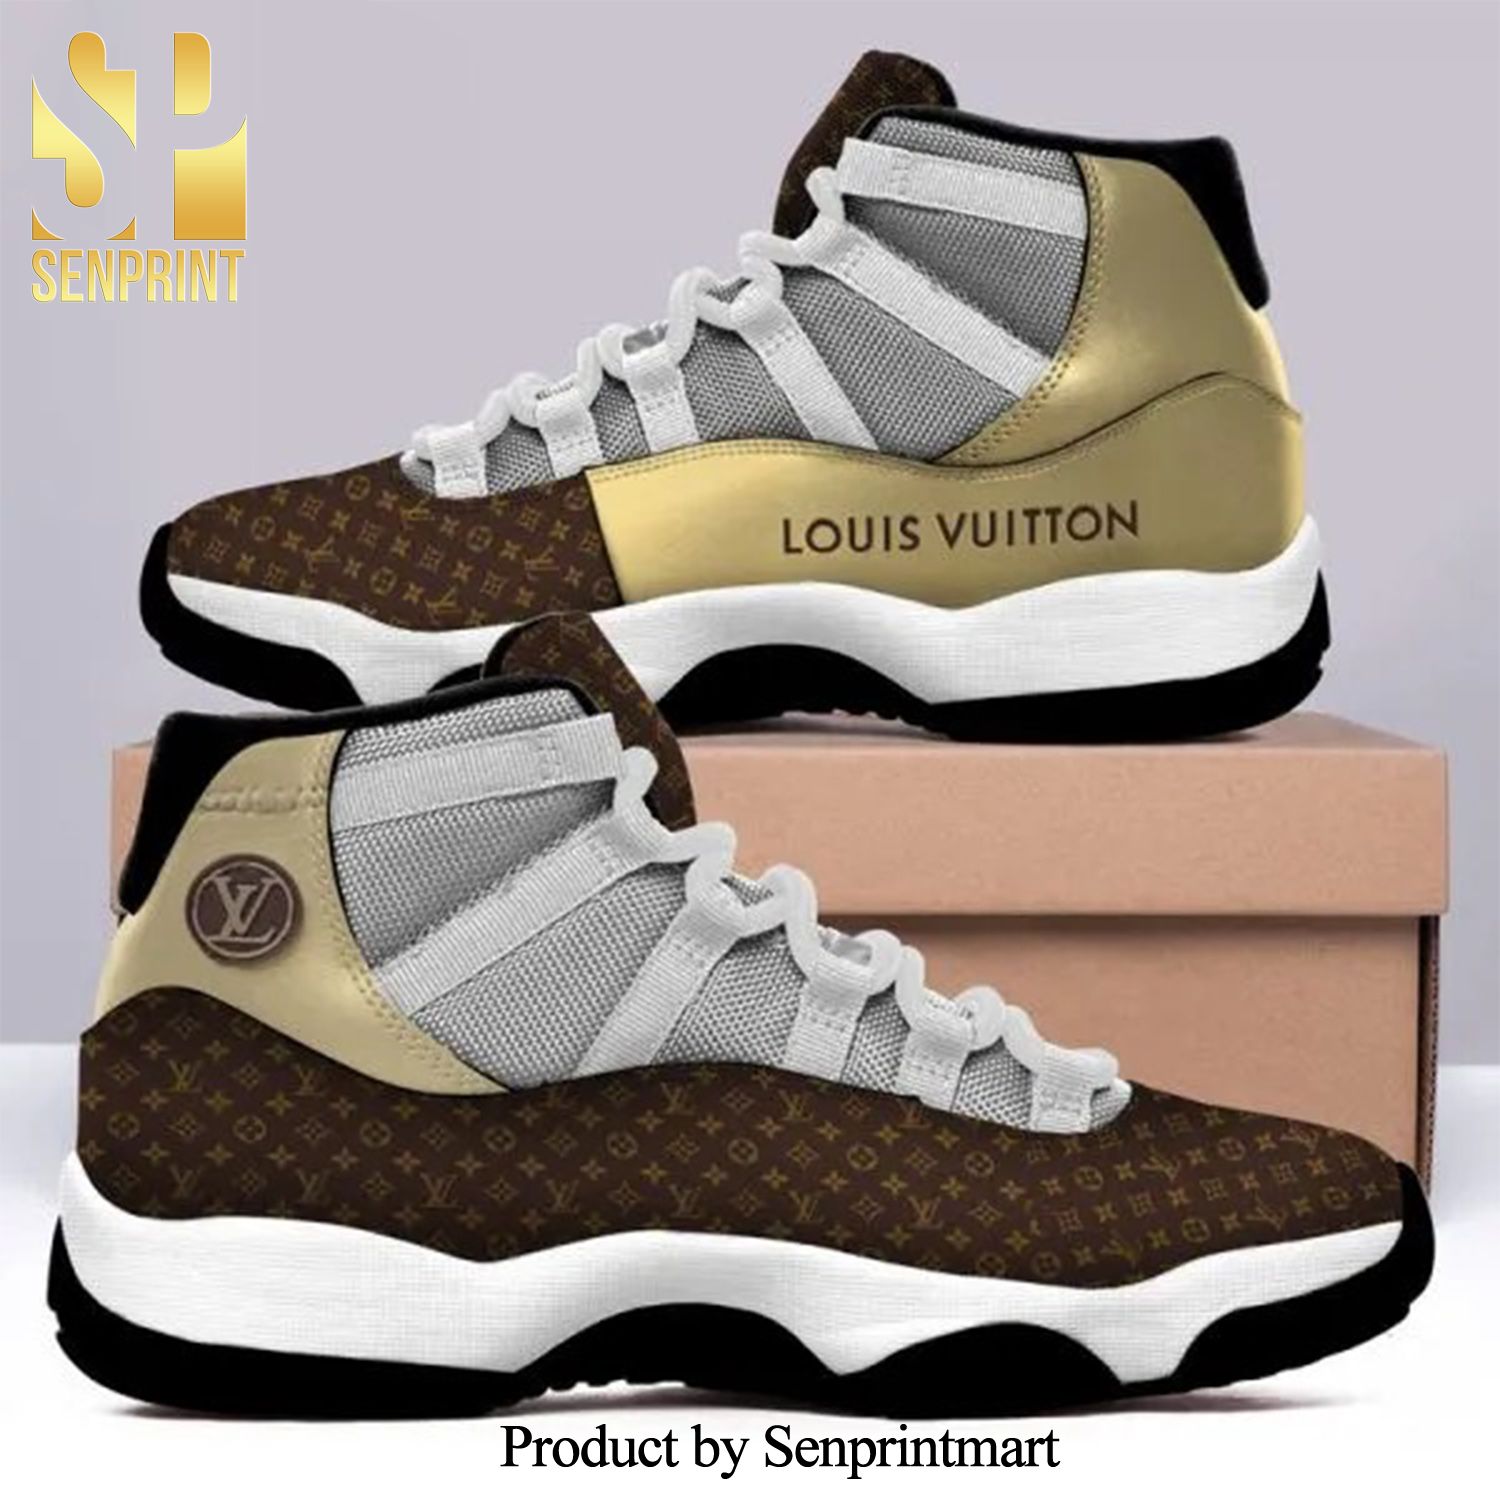 Louis vuitton brown gold Hot Fashion Air Jordan 11